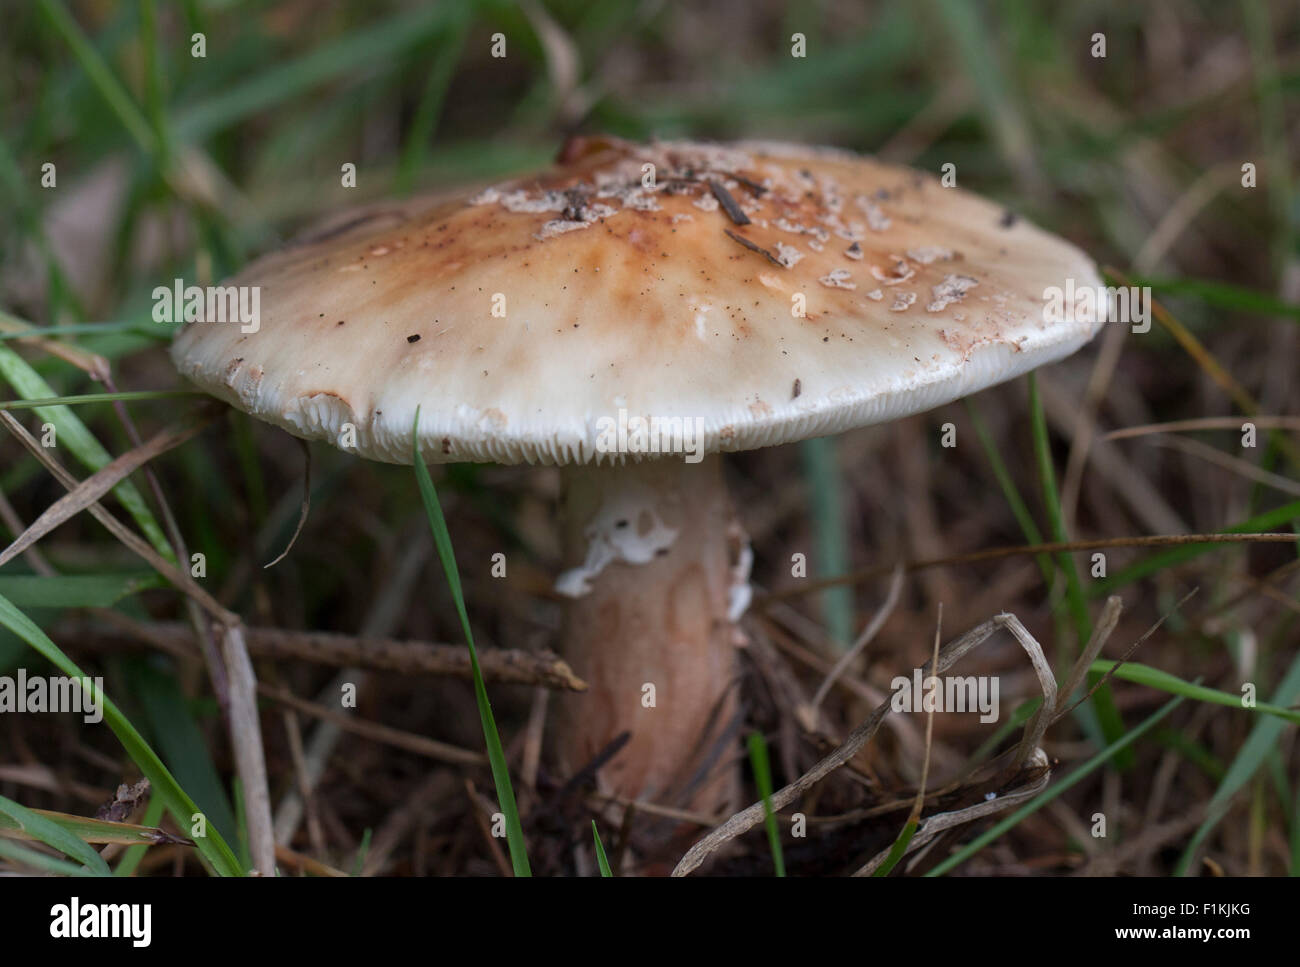 Wild Blusher woodland mushroom Stock Photo